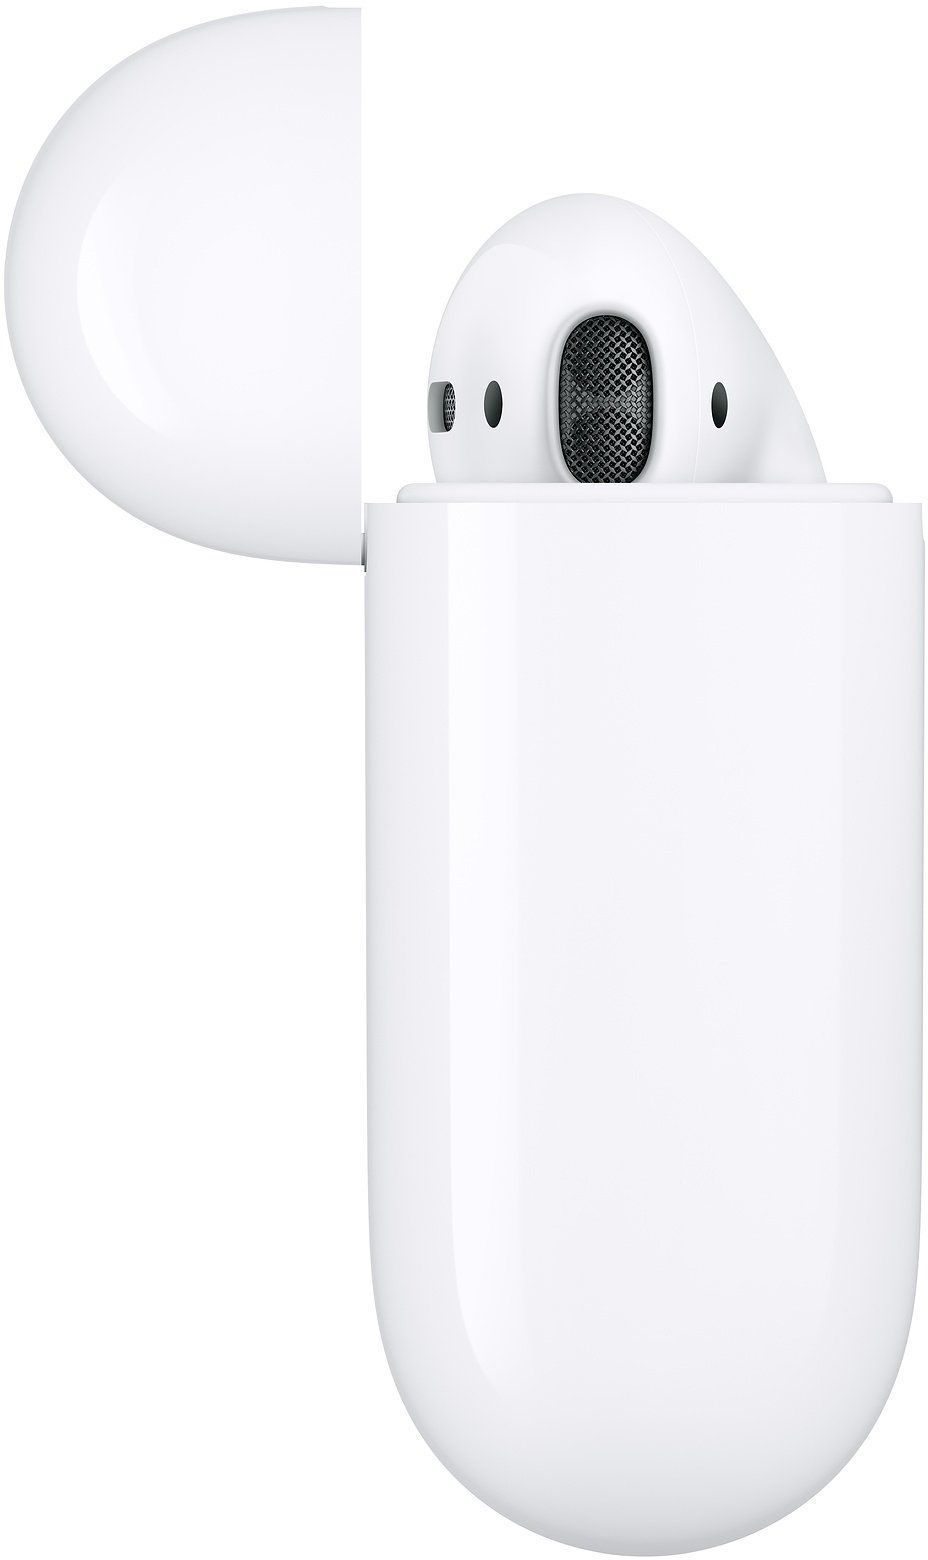 Наушники беспроводные Apple AirPods 2 в футляре с возможностью беспроводной зарядки, картинка 3